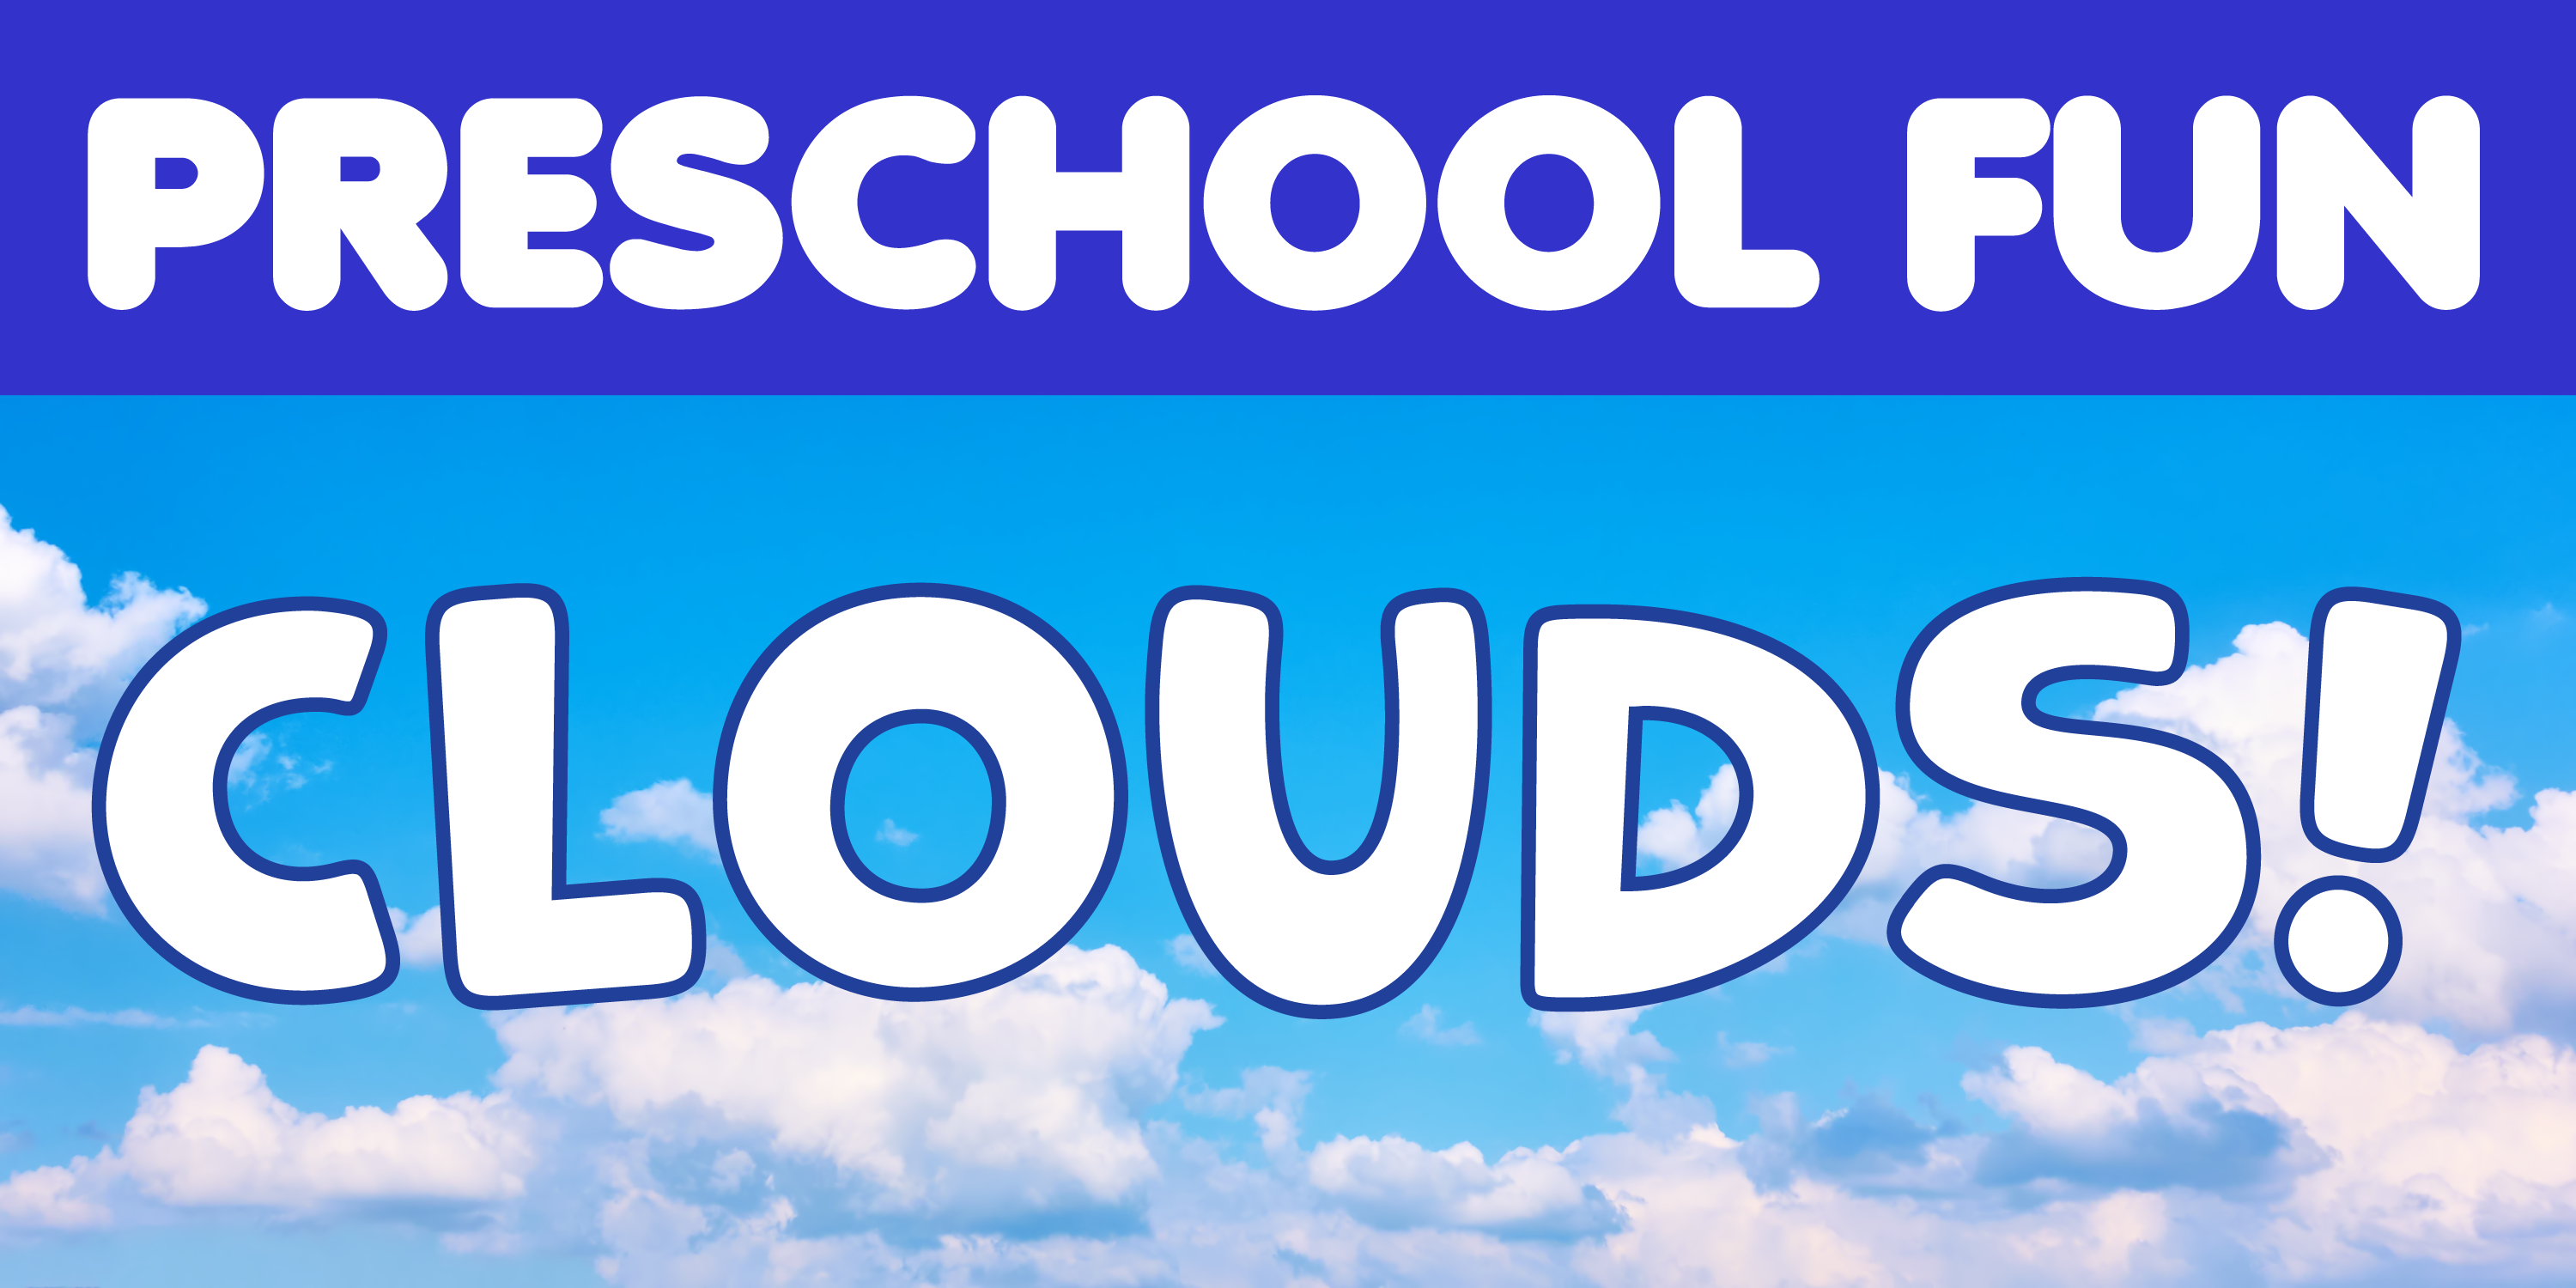 Preschool Fun: Clouds!